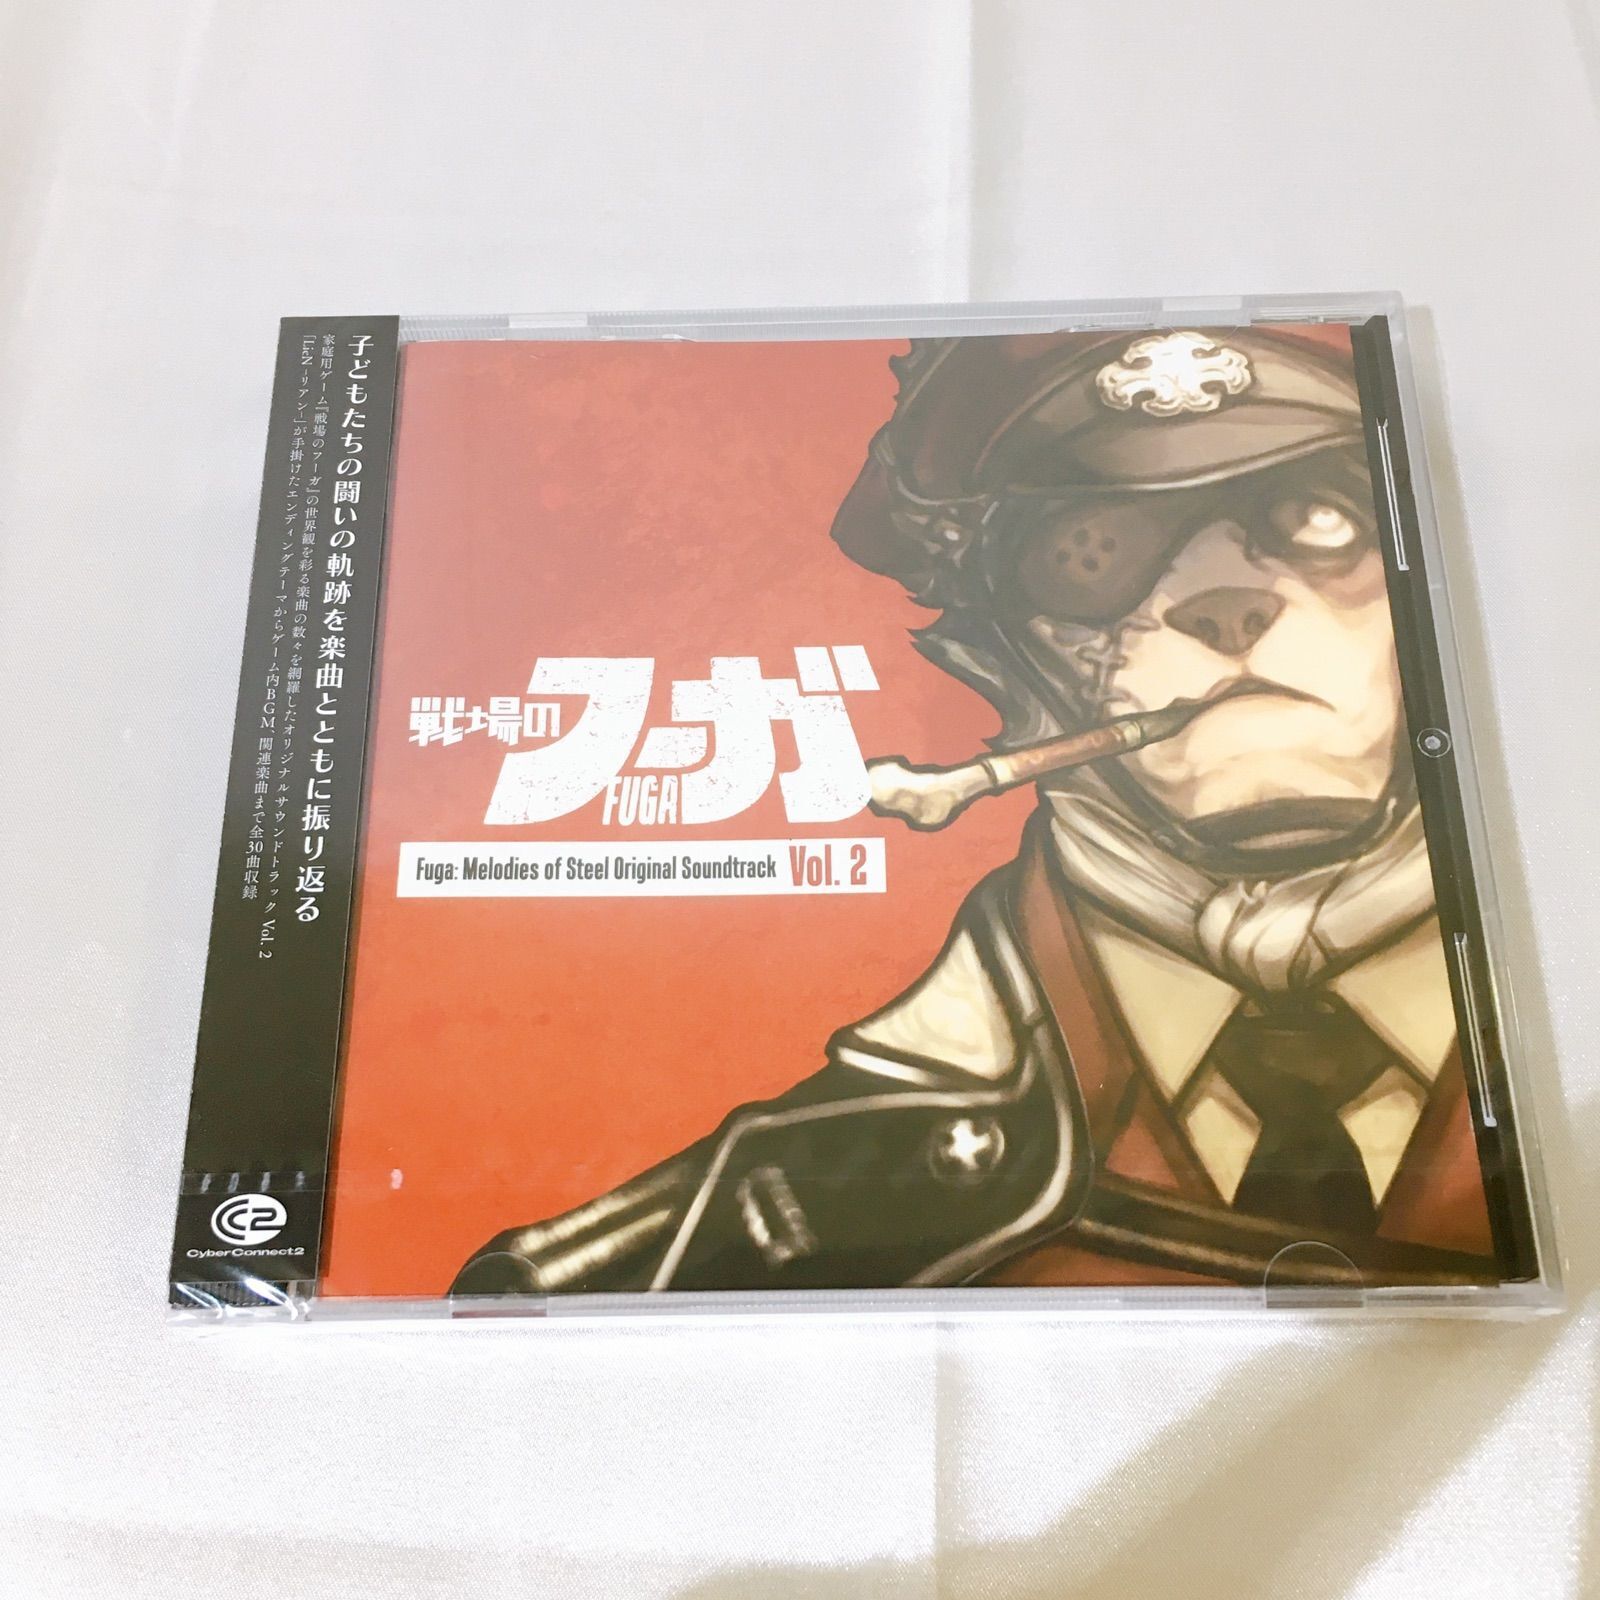 Fuga Melodies of Steel Original Soundtrack vol.2